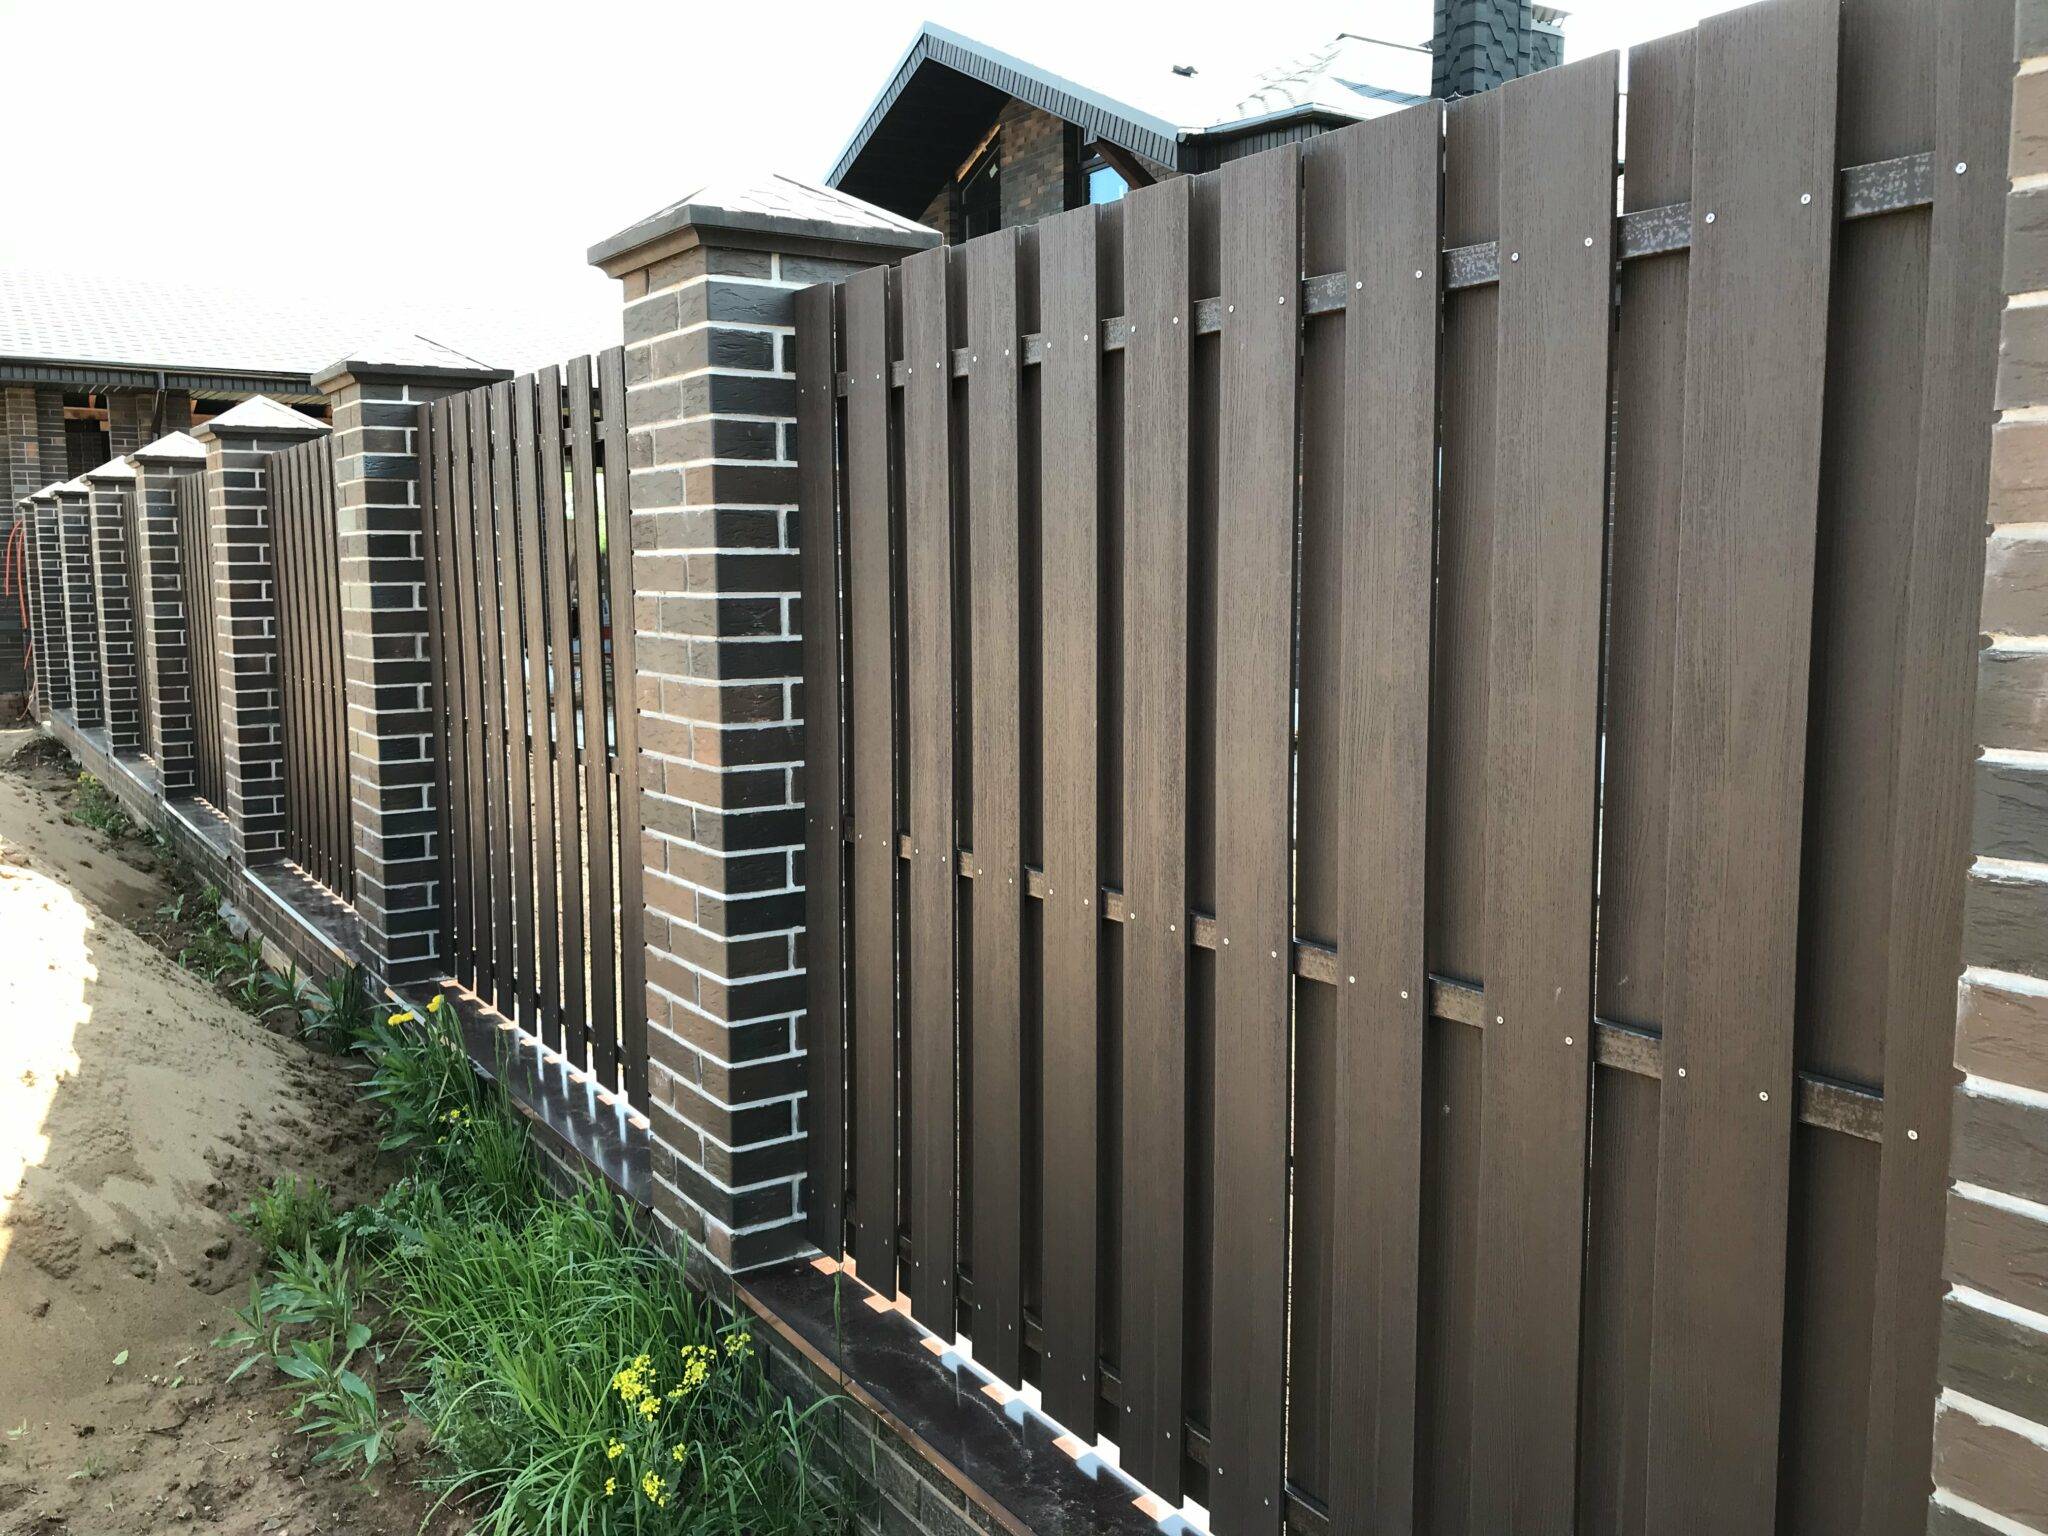 Забор из террасной доски или дпк — его виды, монтаж и стоимость